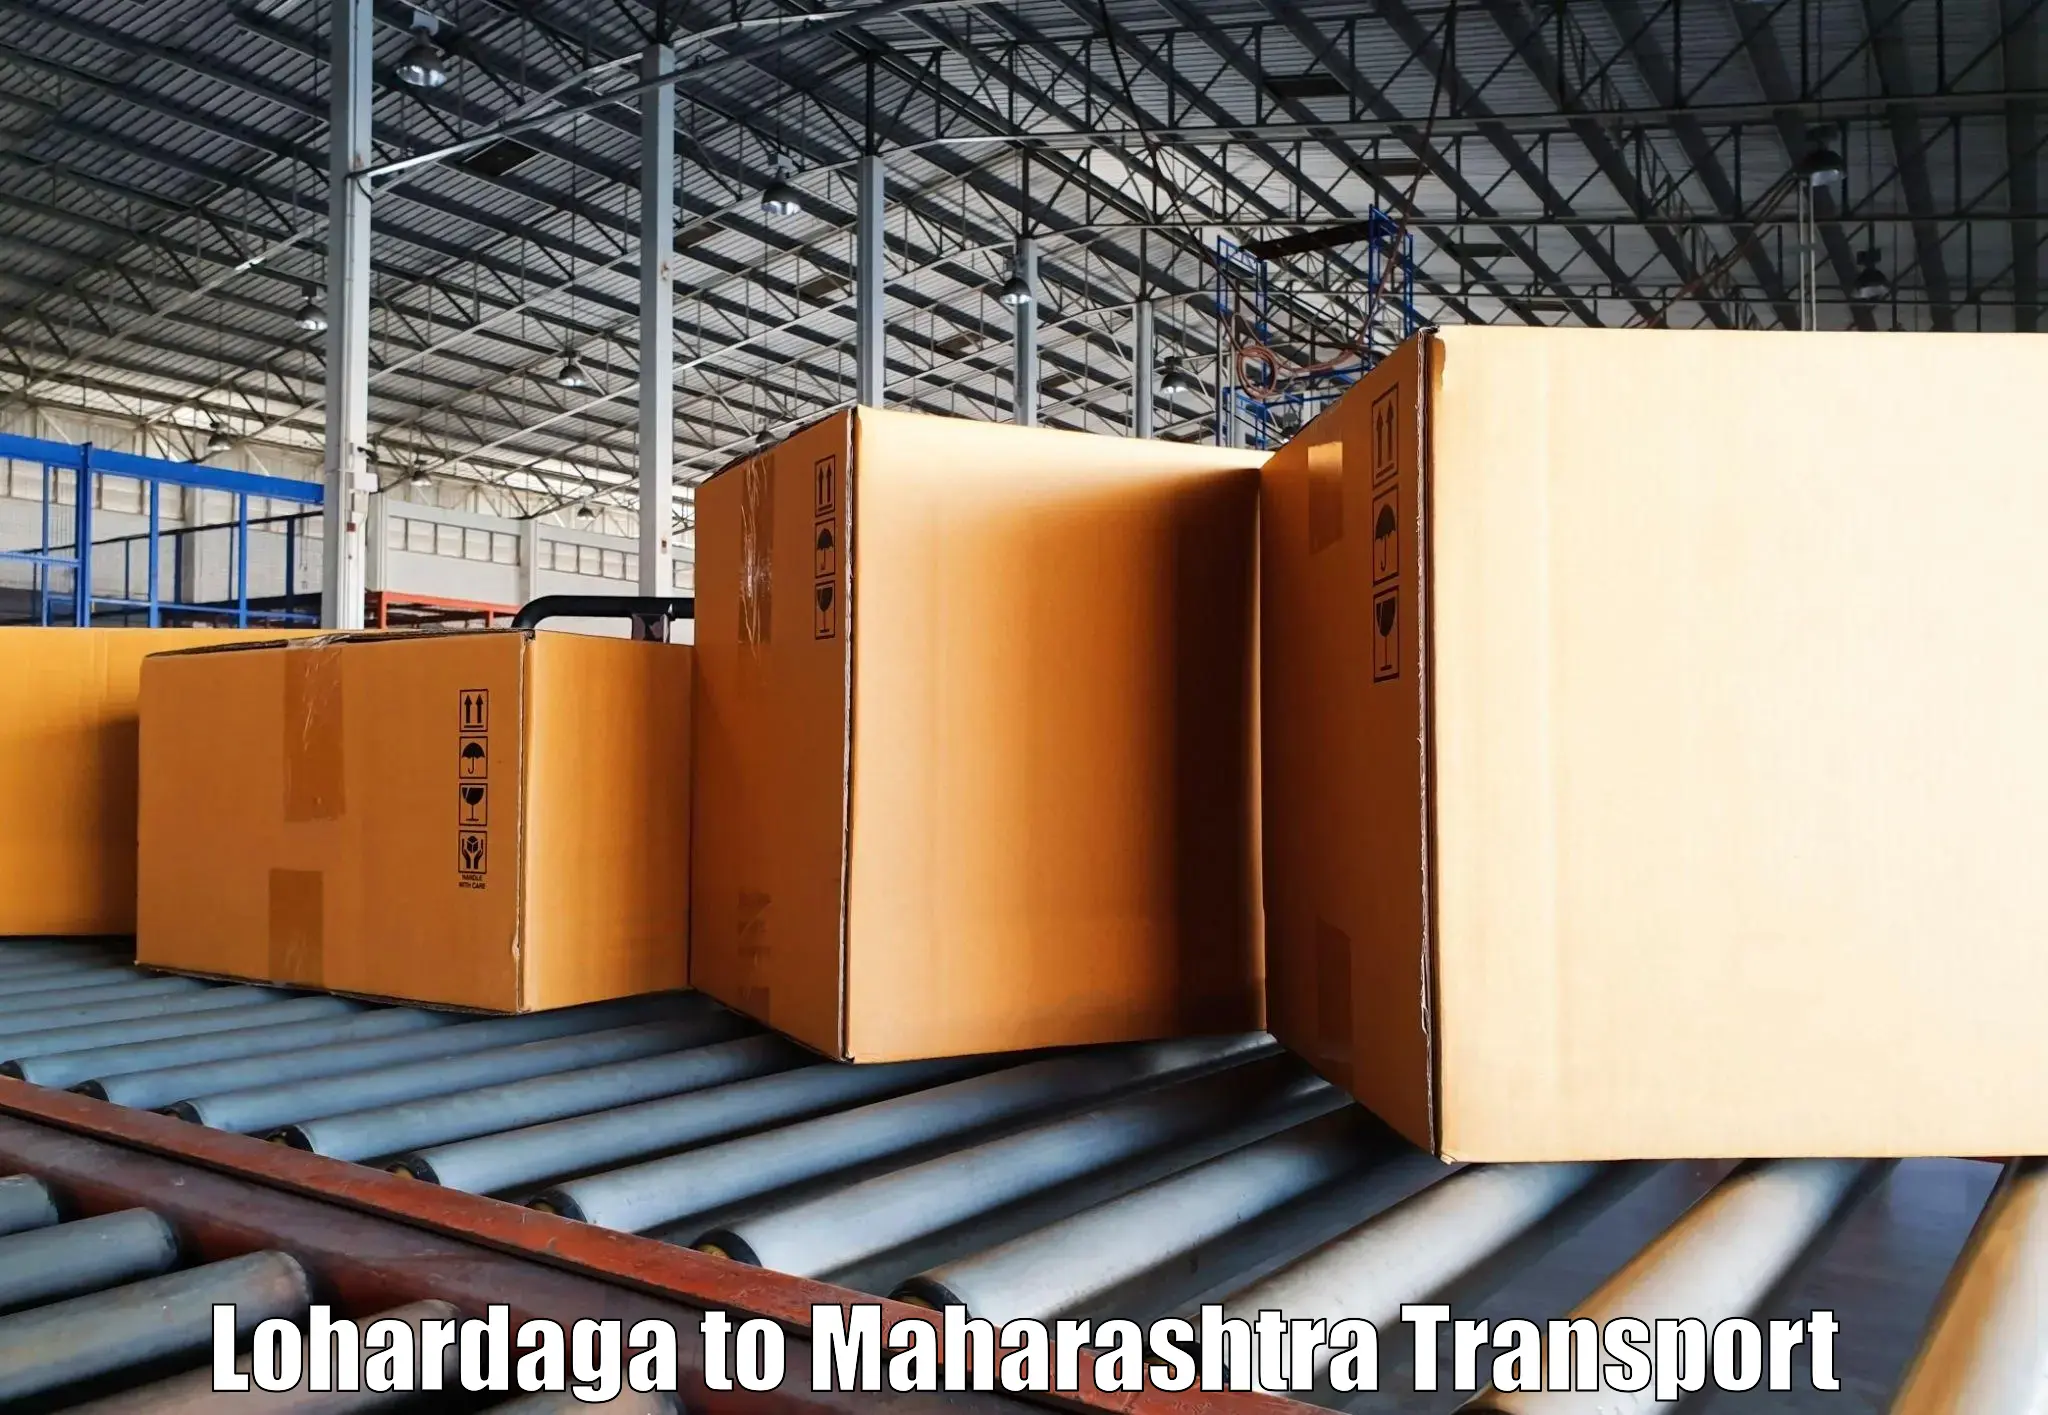 Daily transport service Lohardaga to Maharashtra